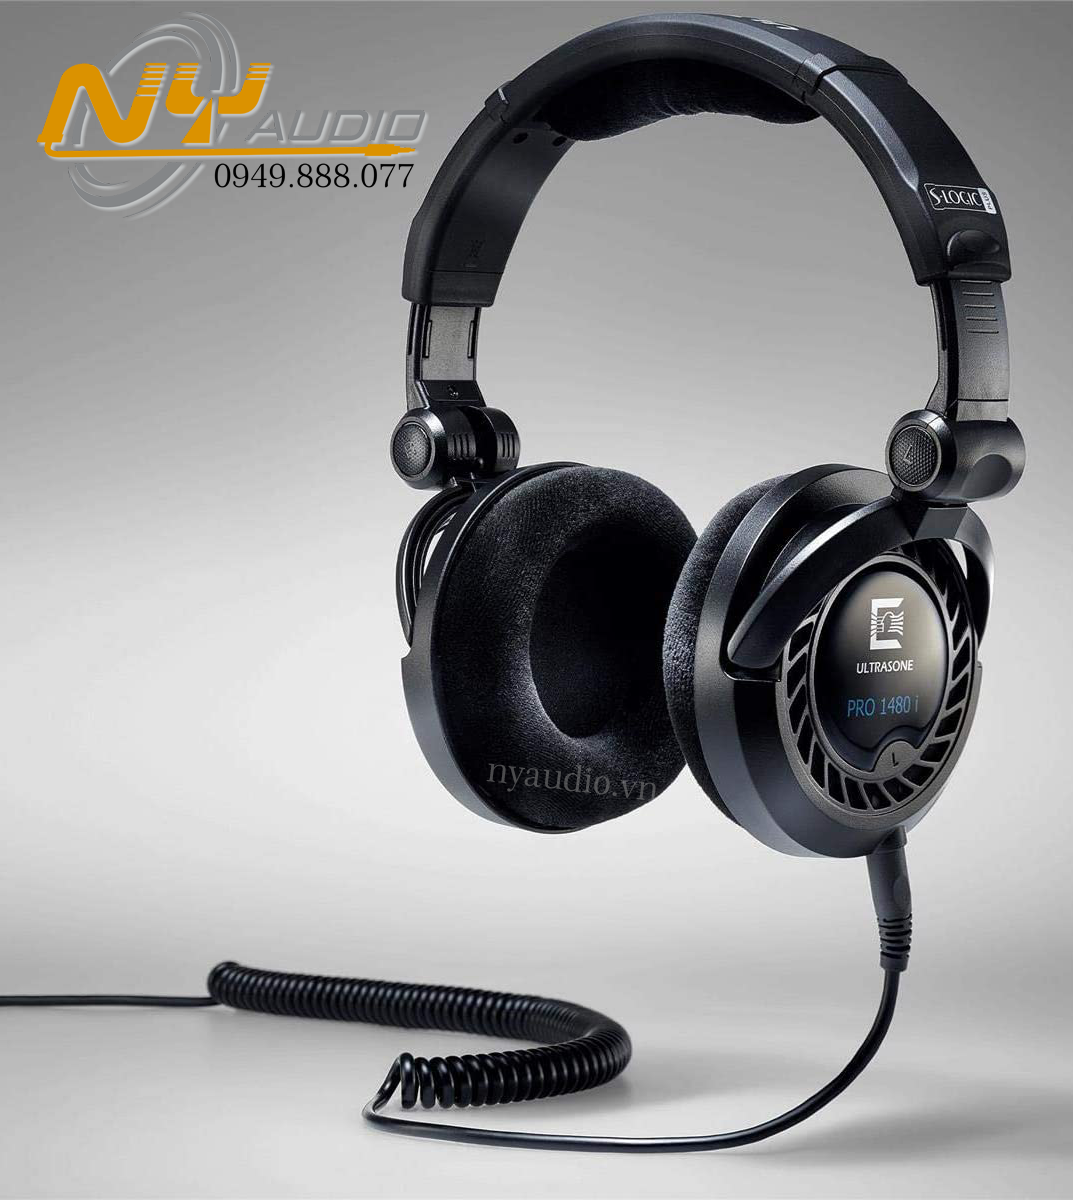 Ultrasone Pro 1480i Monitor Headphones hàng nhập khẩu chính hãng